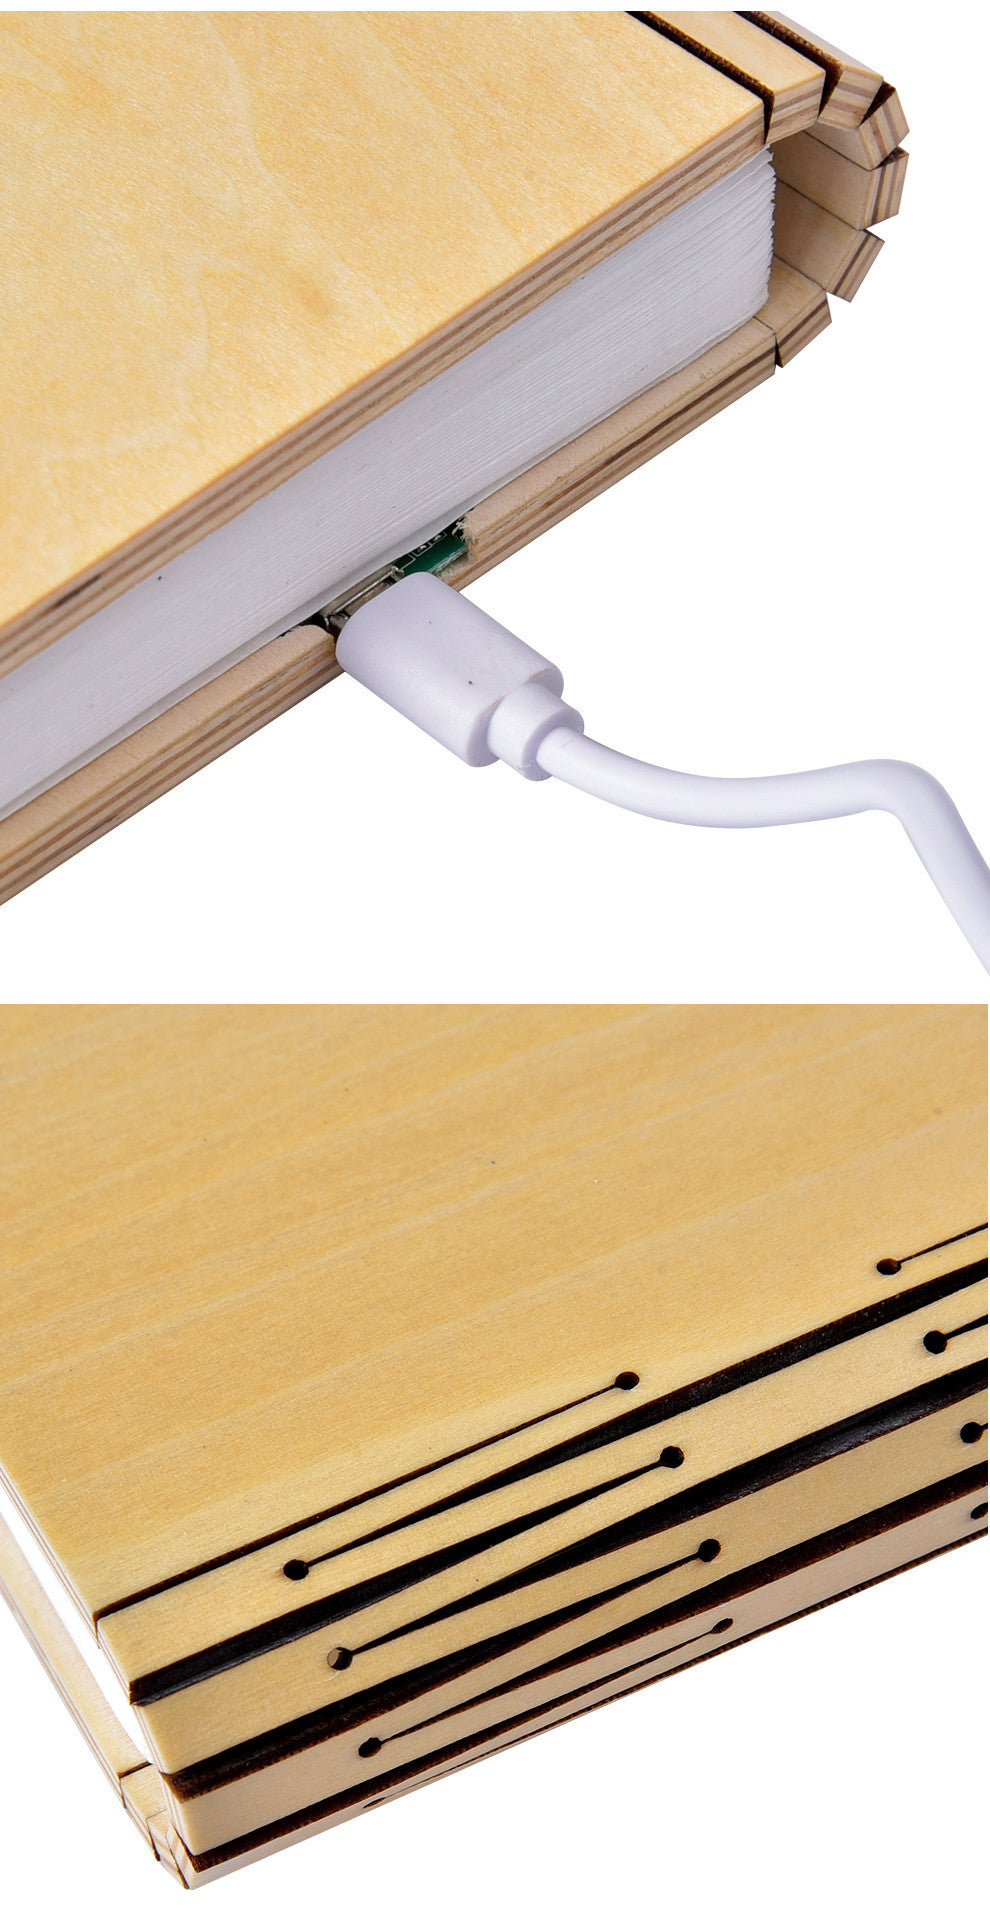 LED -Nachtlichtklappbuch Licht USB -Anschluss wiederaufladbare Holzmagnetlampe